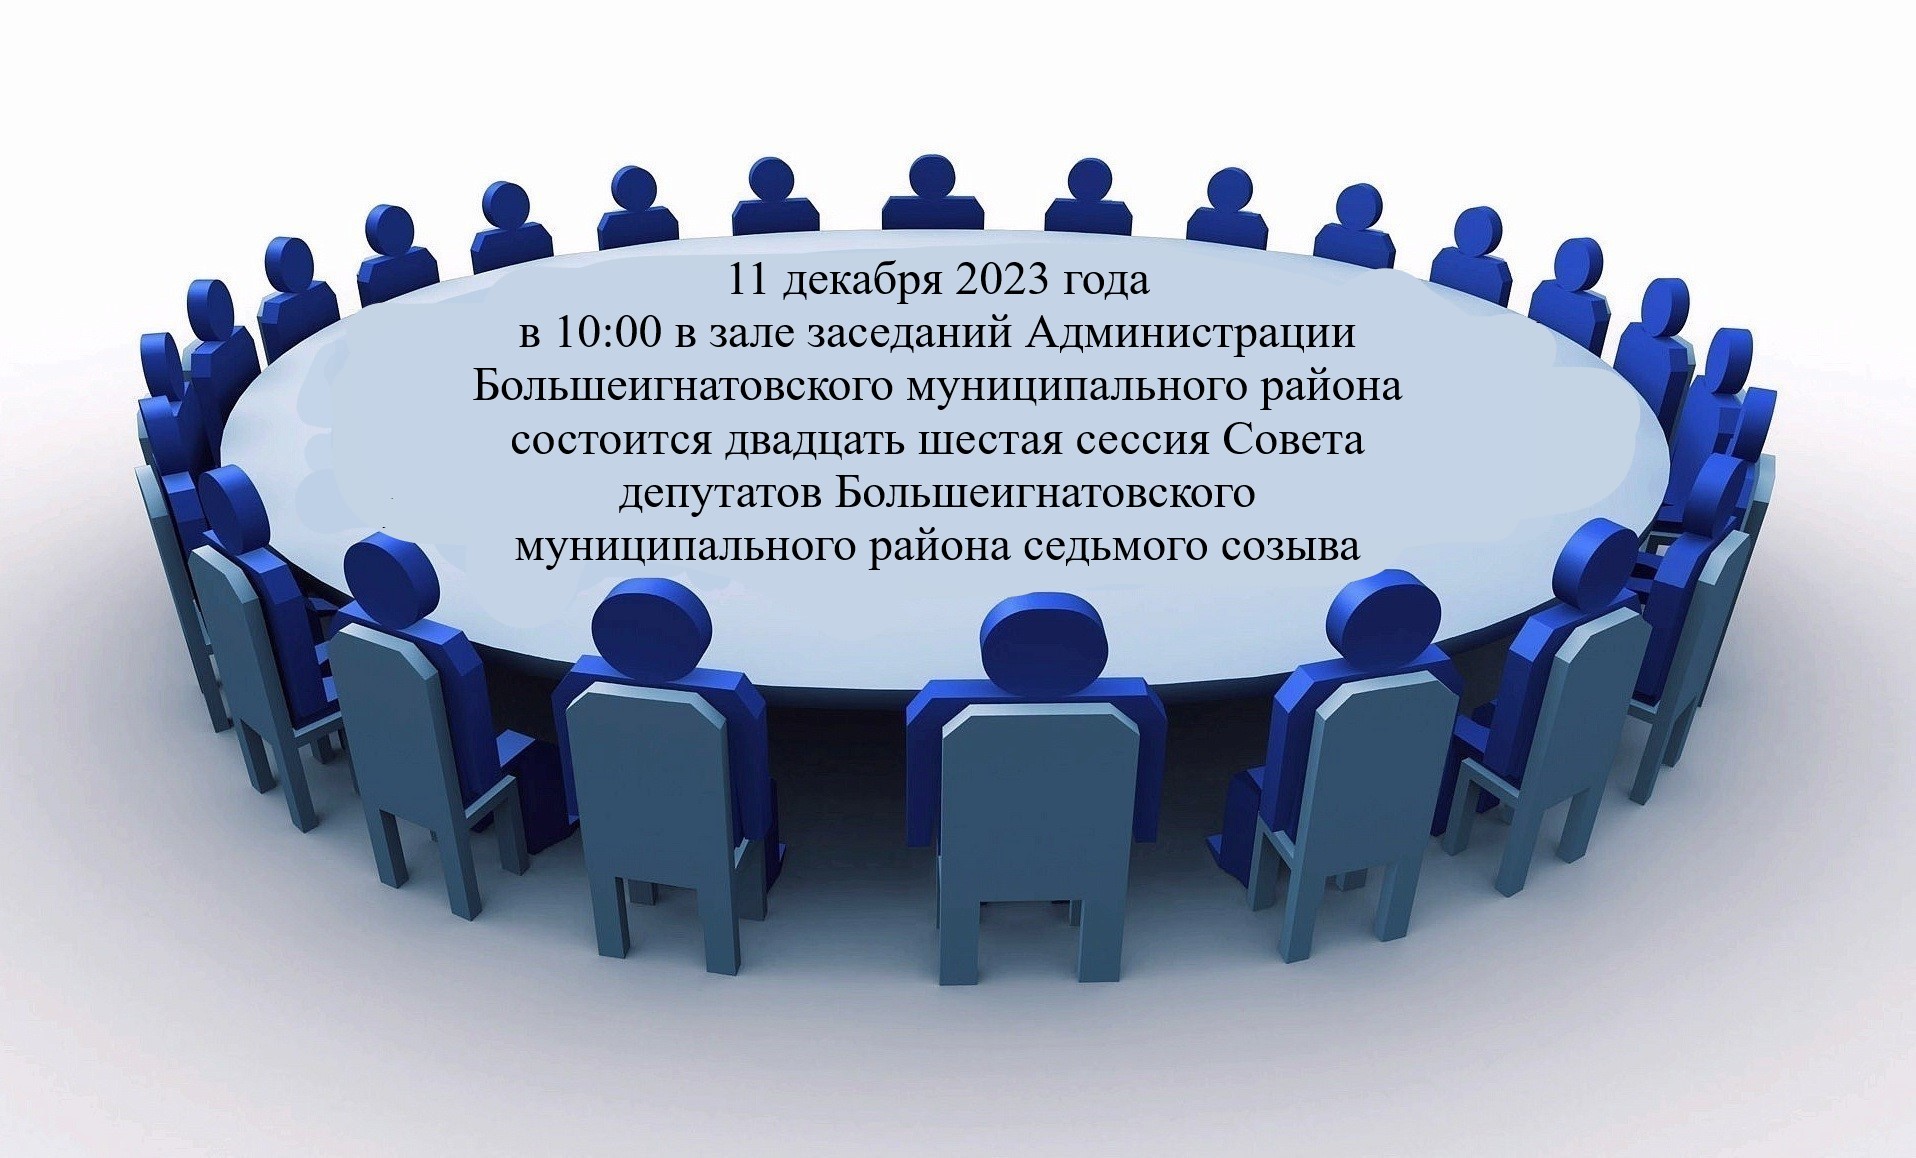 11 декабря 2023 года в 10:00 в зале заседаний Администрации Большеигнатовского муниципального района состоится двадцать шестая сессия Совета депутатов Большеигнатовского муниципального района седьмого созыва.